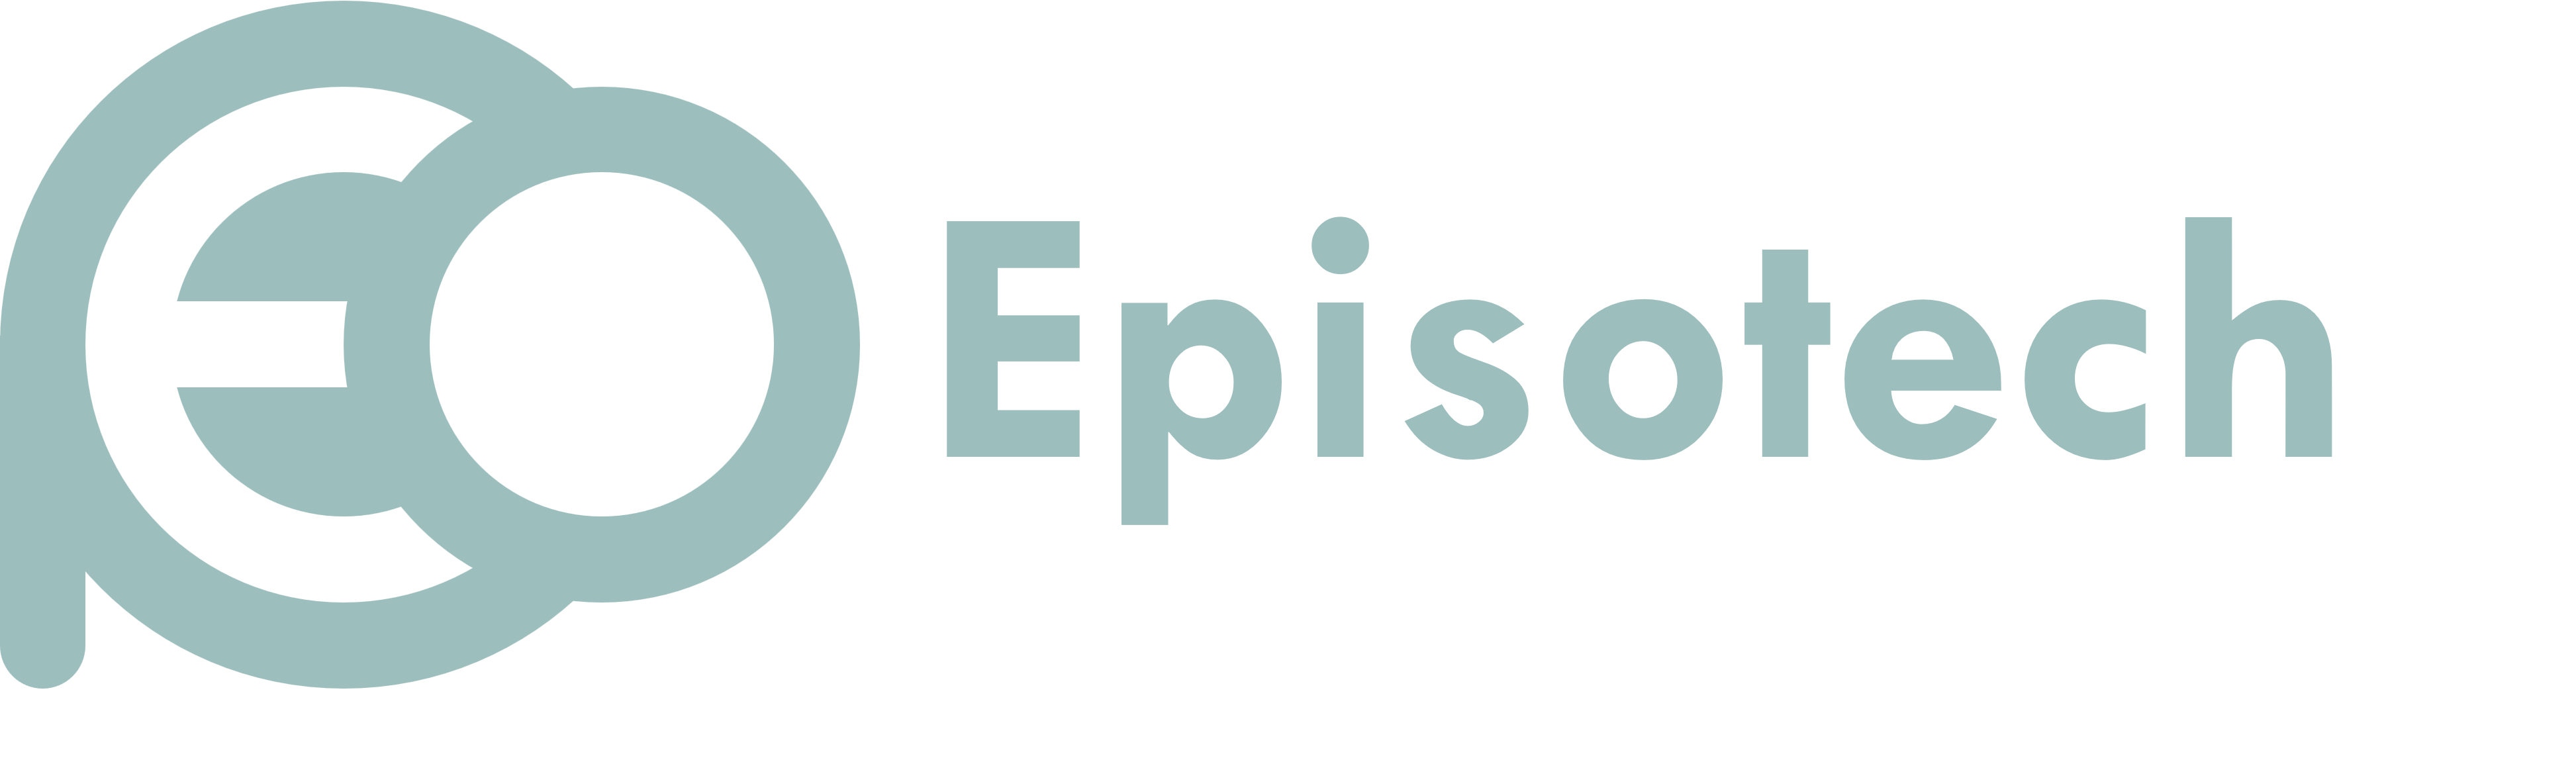 Episotech Ltd. Logo